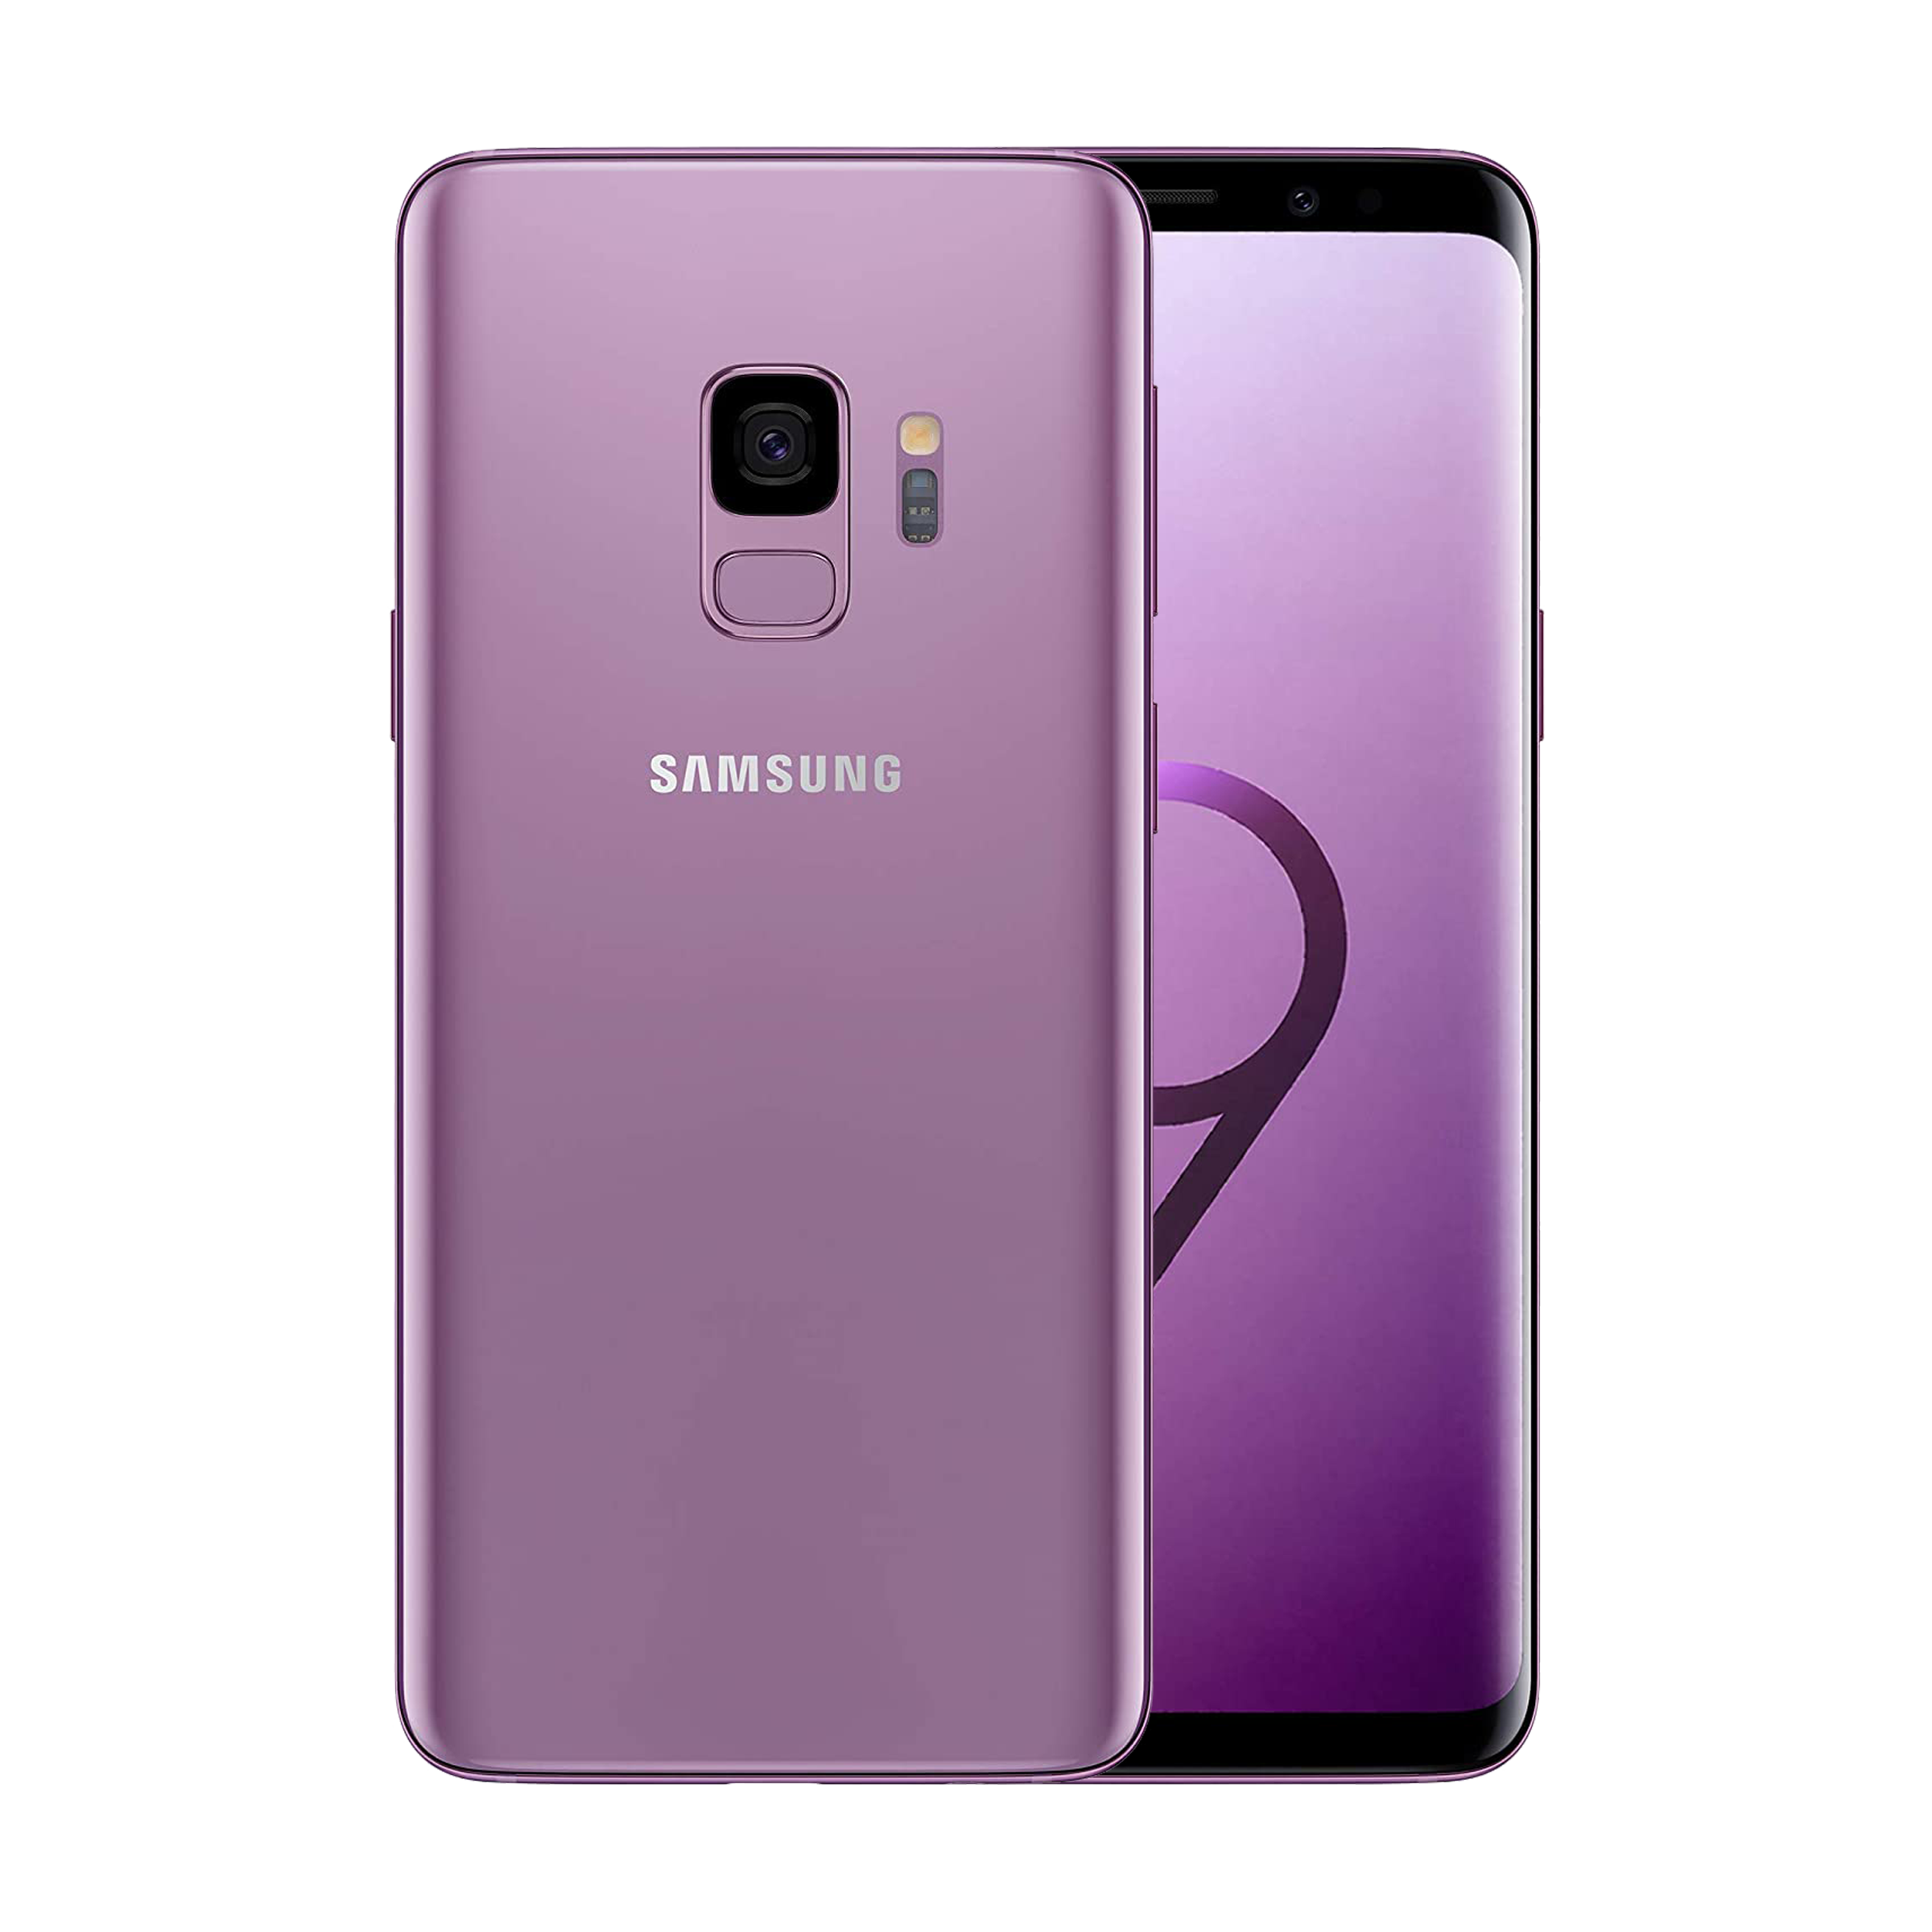 Samsung Galaxy S9 64GB Morado Desbloqueado reformado